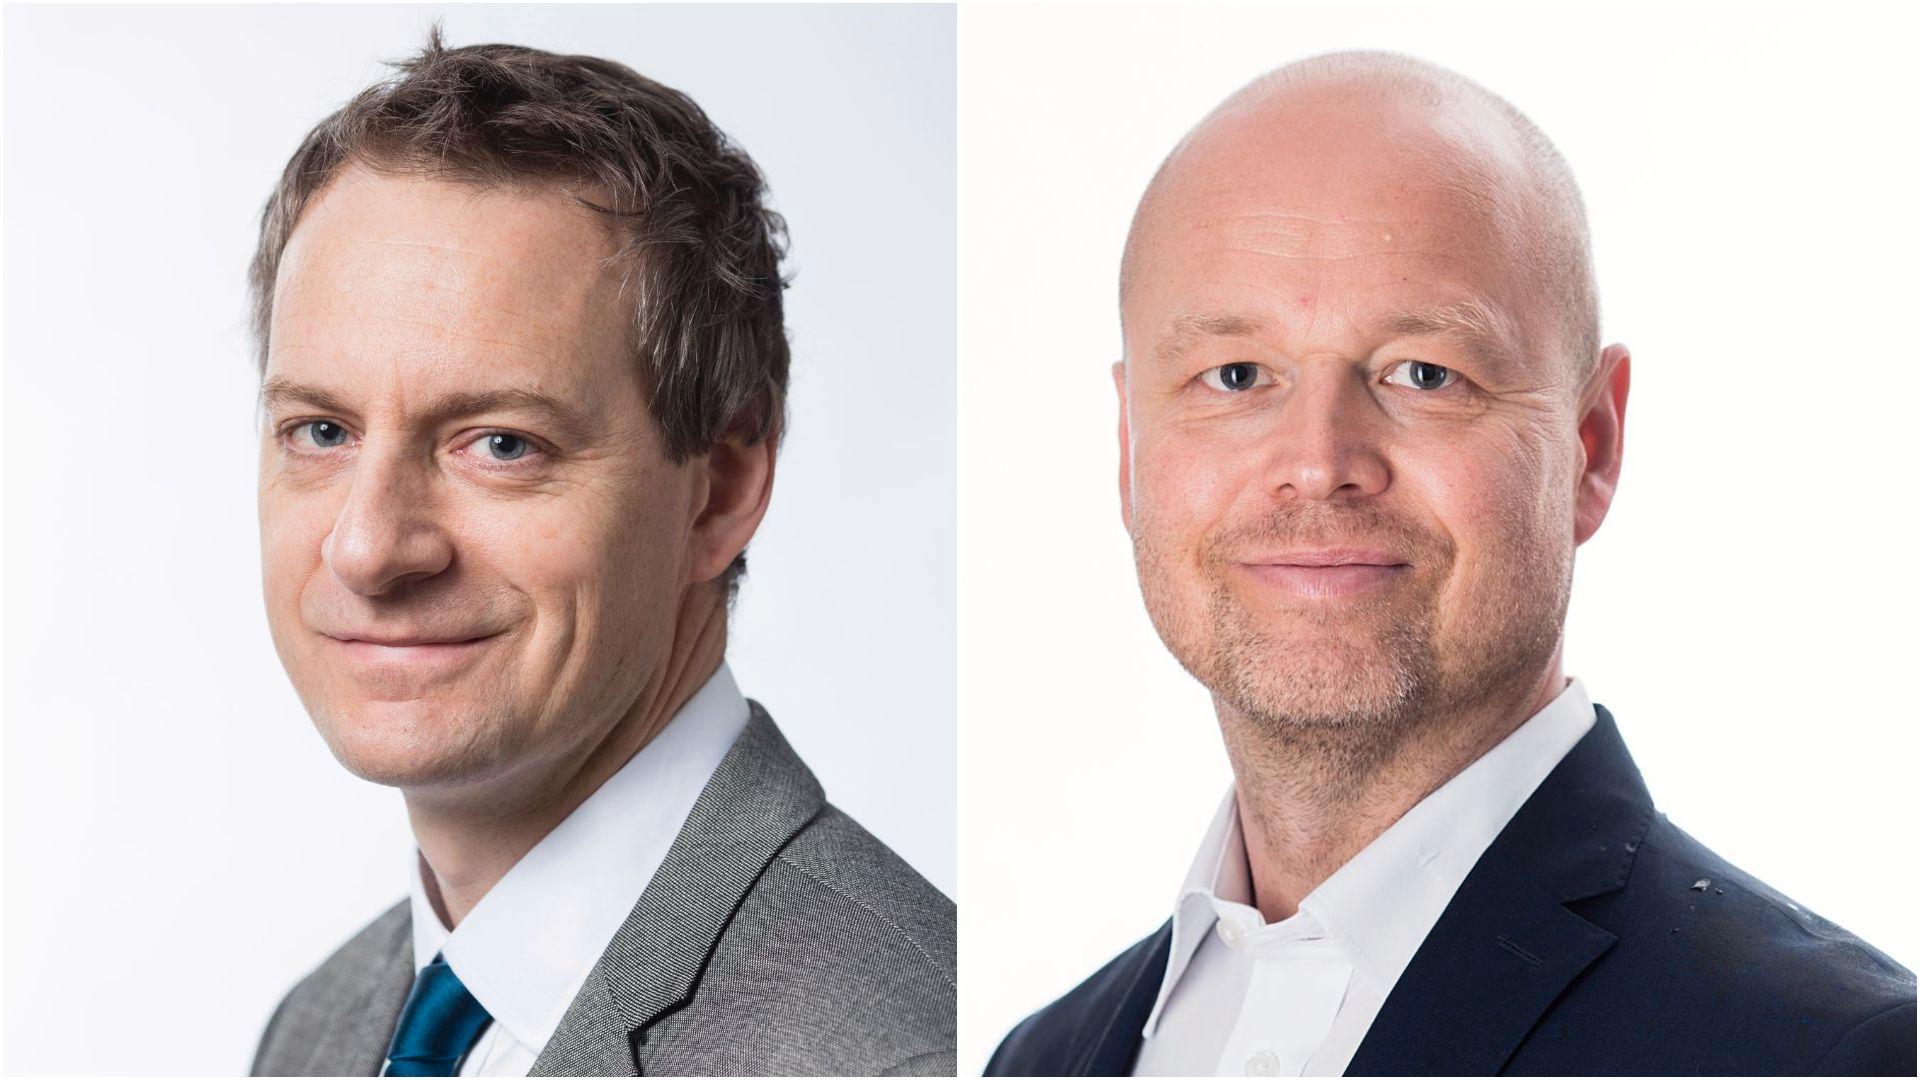 Karsten Friis og Vegard Valther Hansen er seniorrådgivere ved Norsk Utenrikspolitisk Institutt (Nupi).